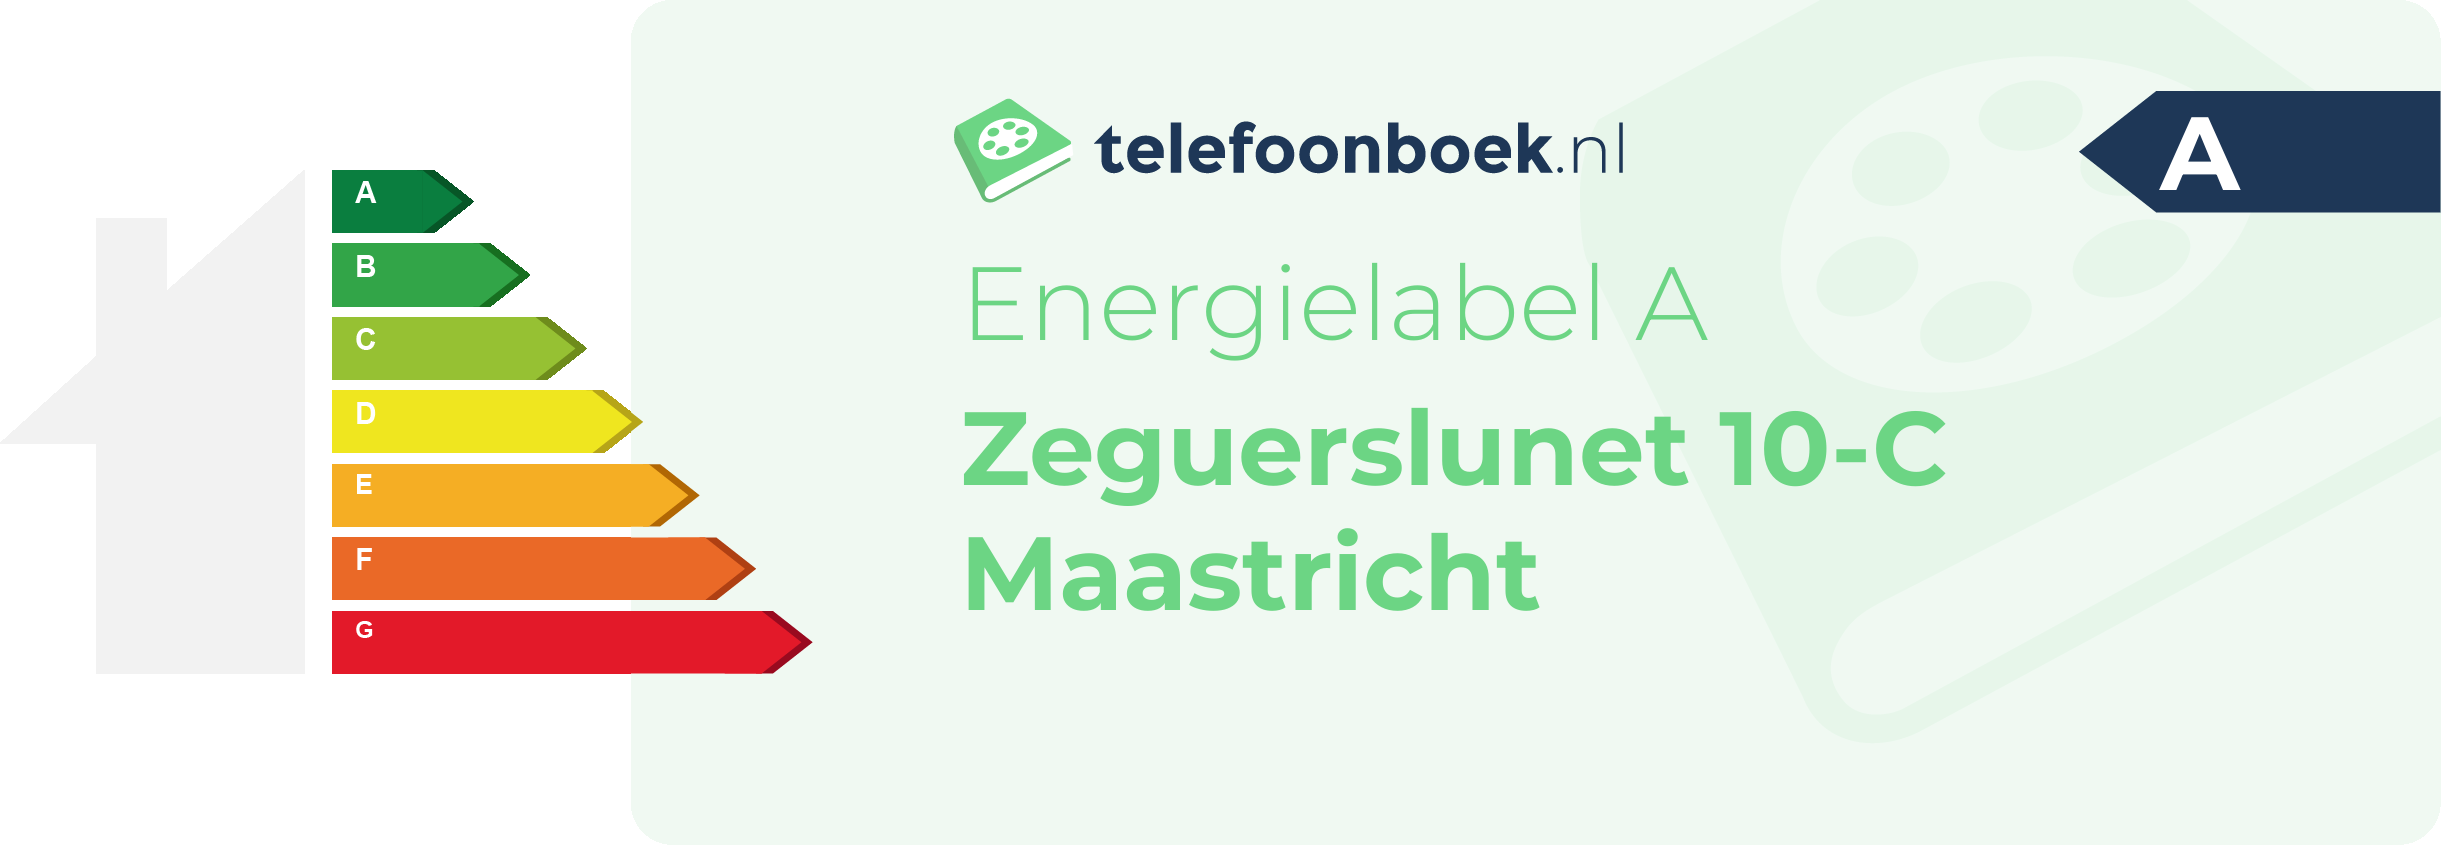 Energielabel Zeguerslunet 10-C Maastricht